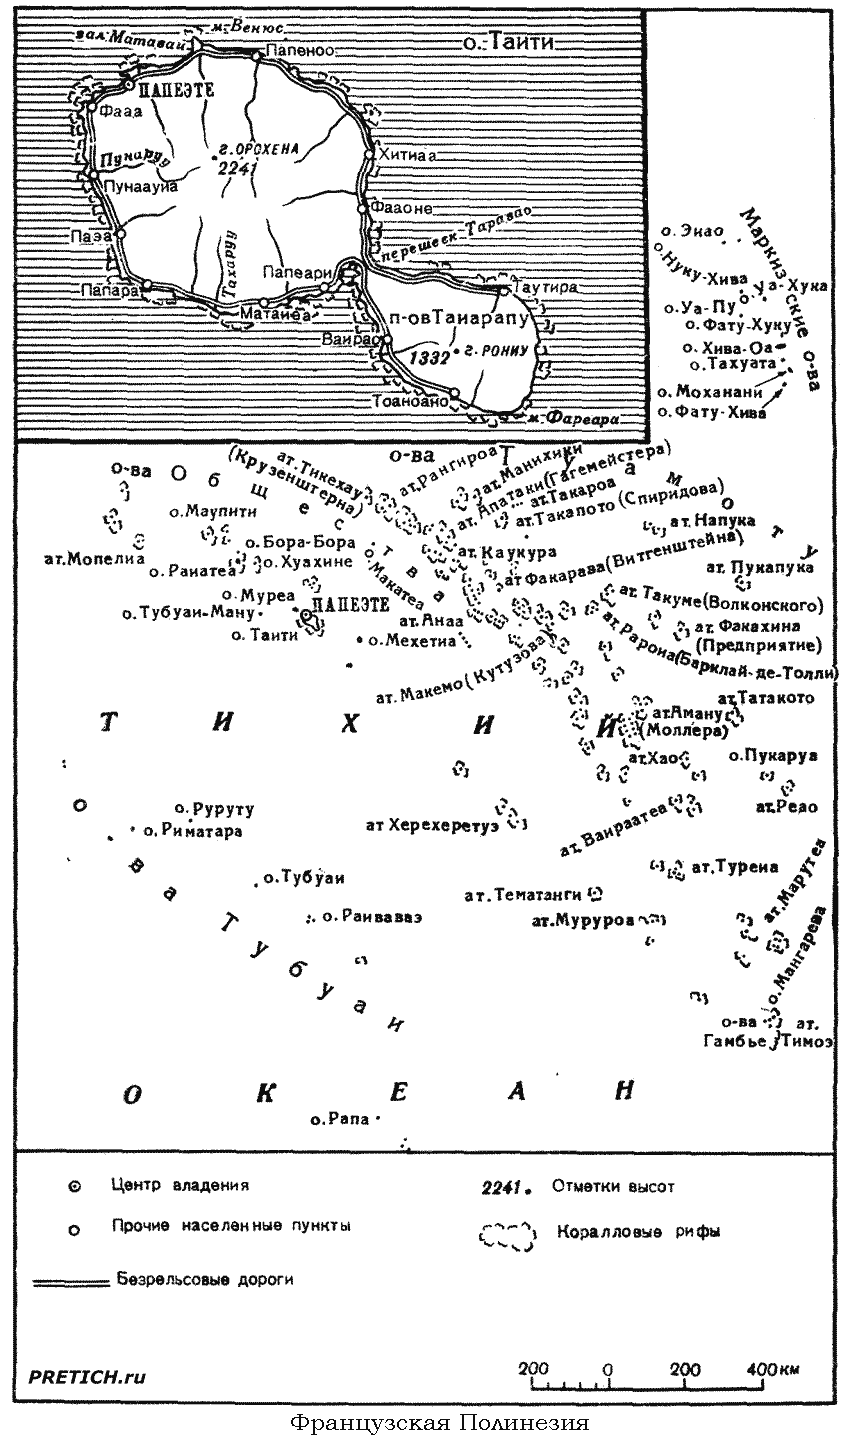 Французская Полинезия подробная карта